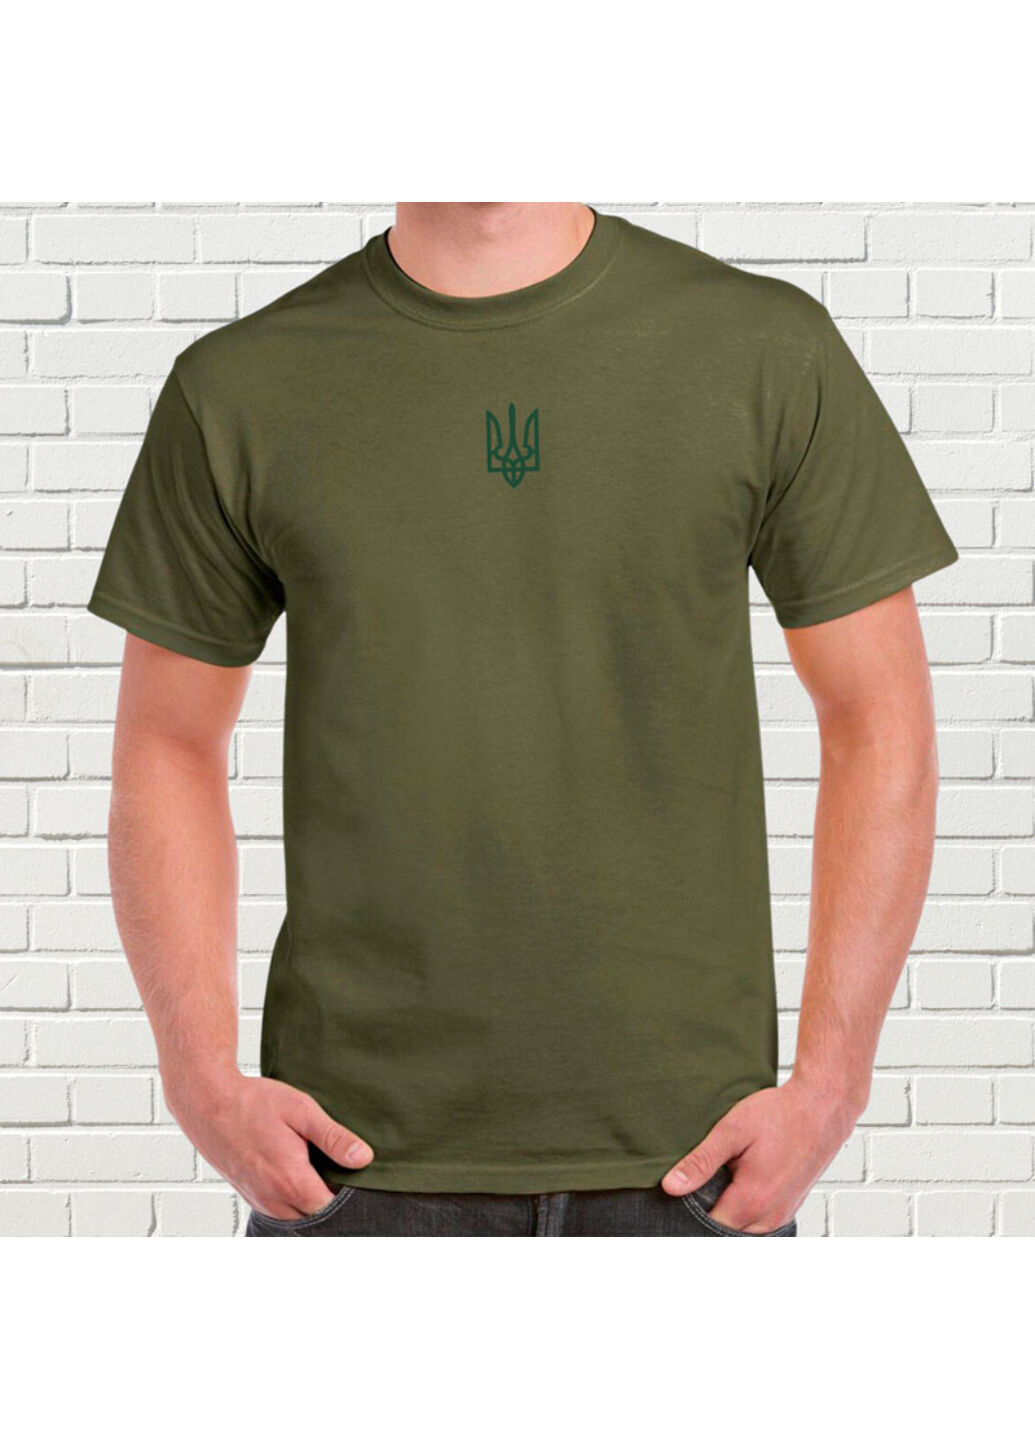 Хаки (оливковая) футболка з вишивкою зеленого тризуба мужская хаки m No Brand